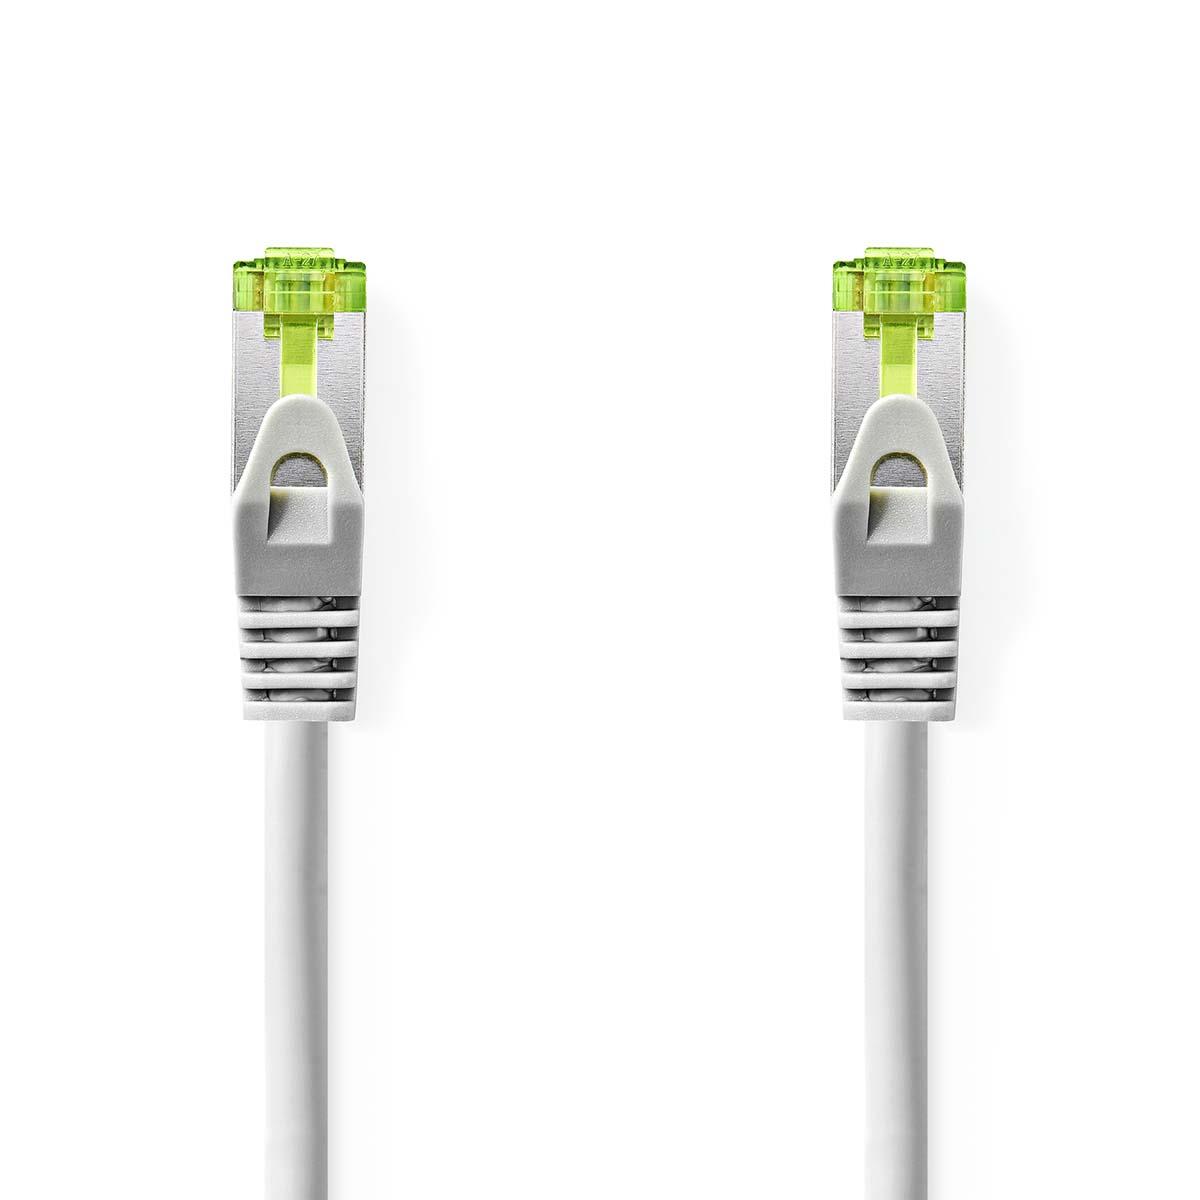 Cable ethernet rj45(8p8c) cat7 (10000 mbit/s) gris 5.0m